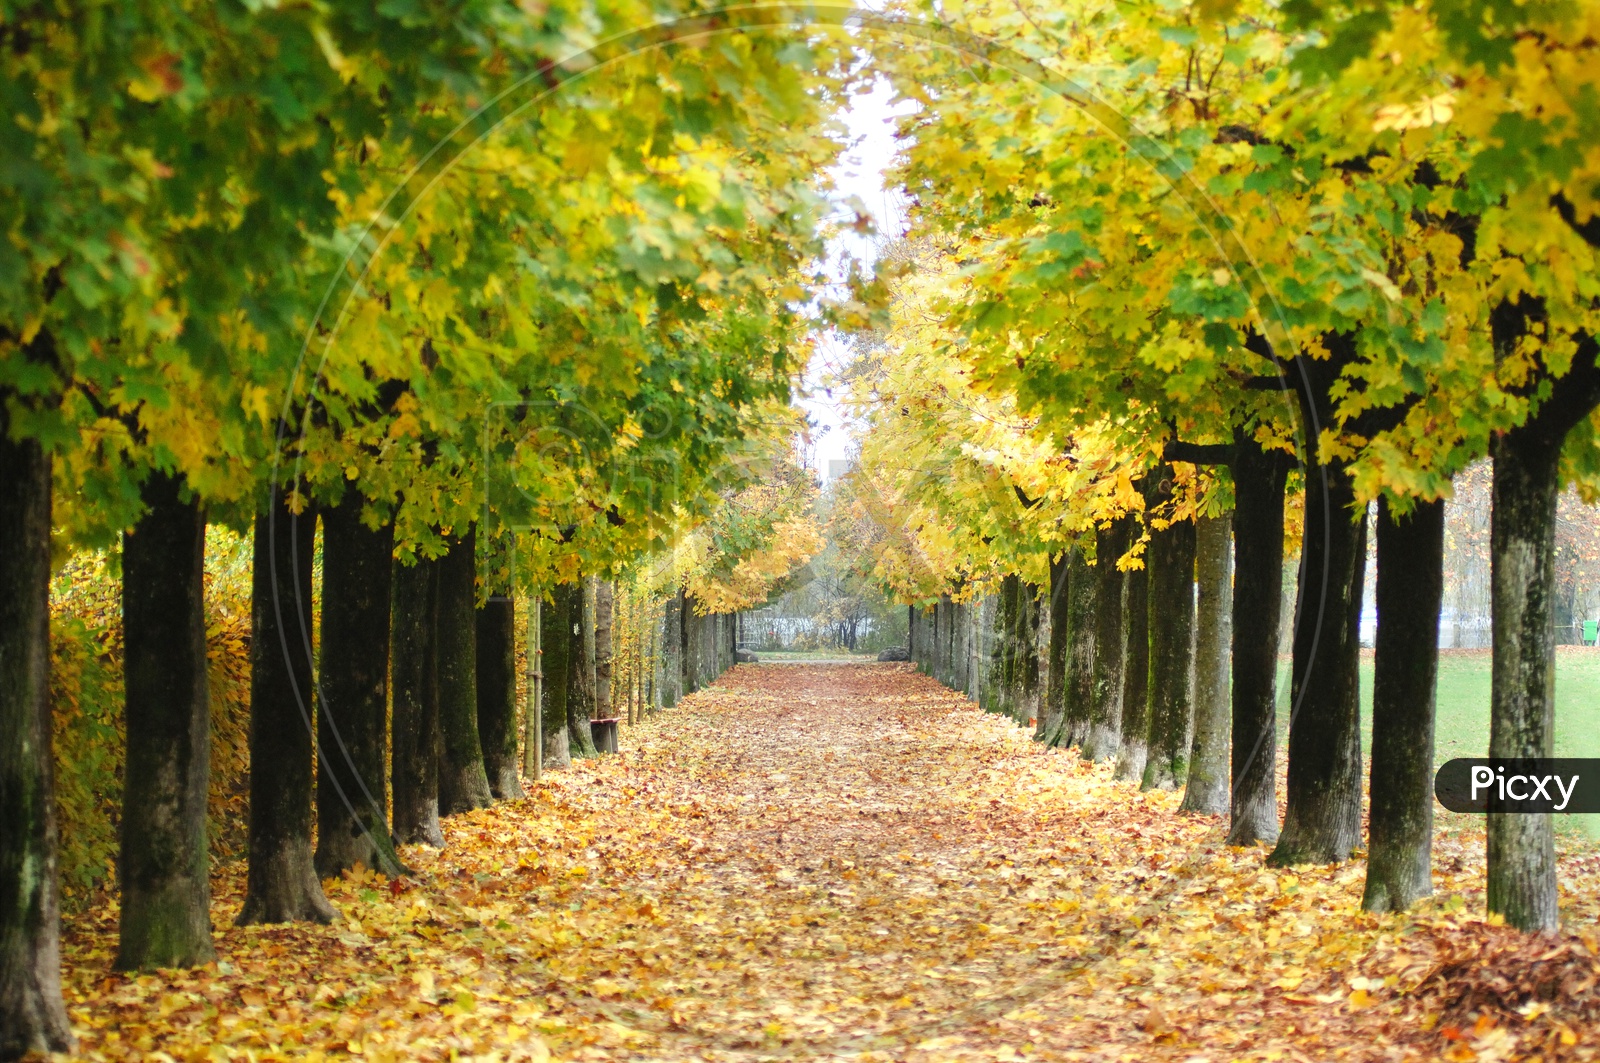 A Lane of Autumn Trees